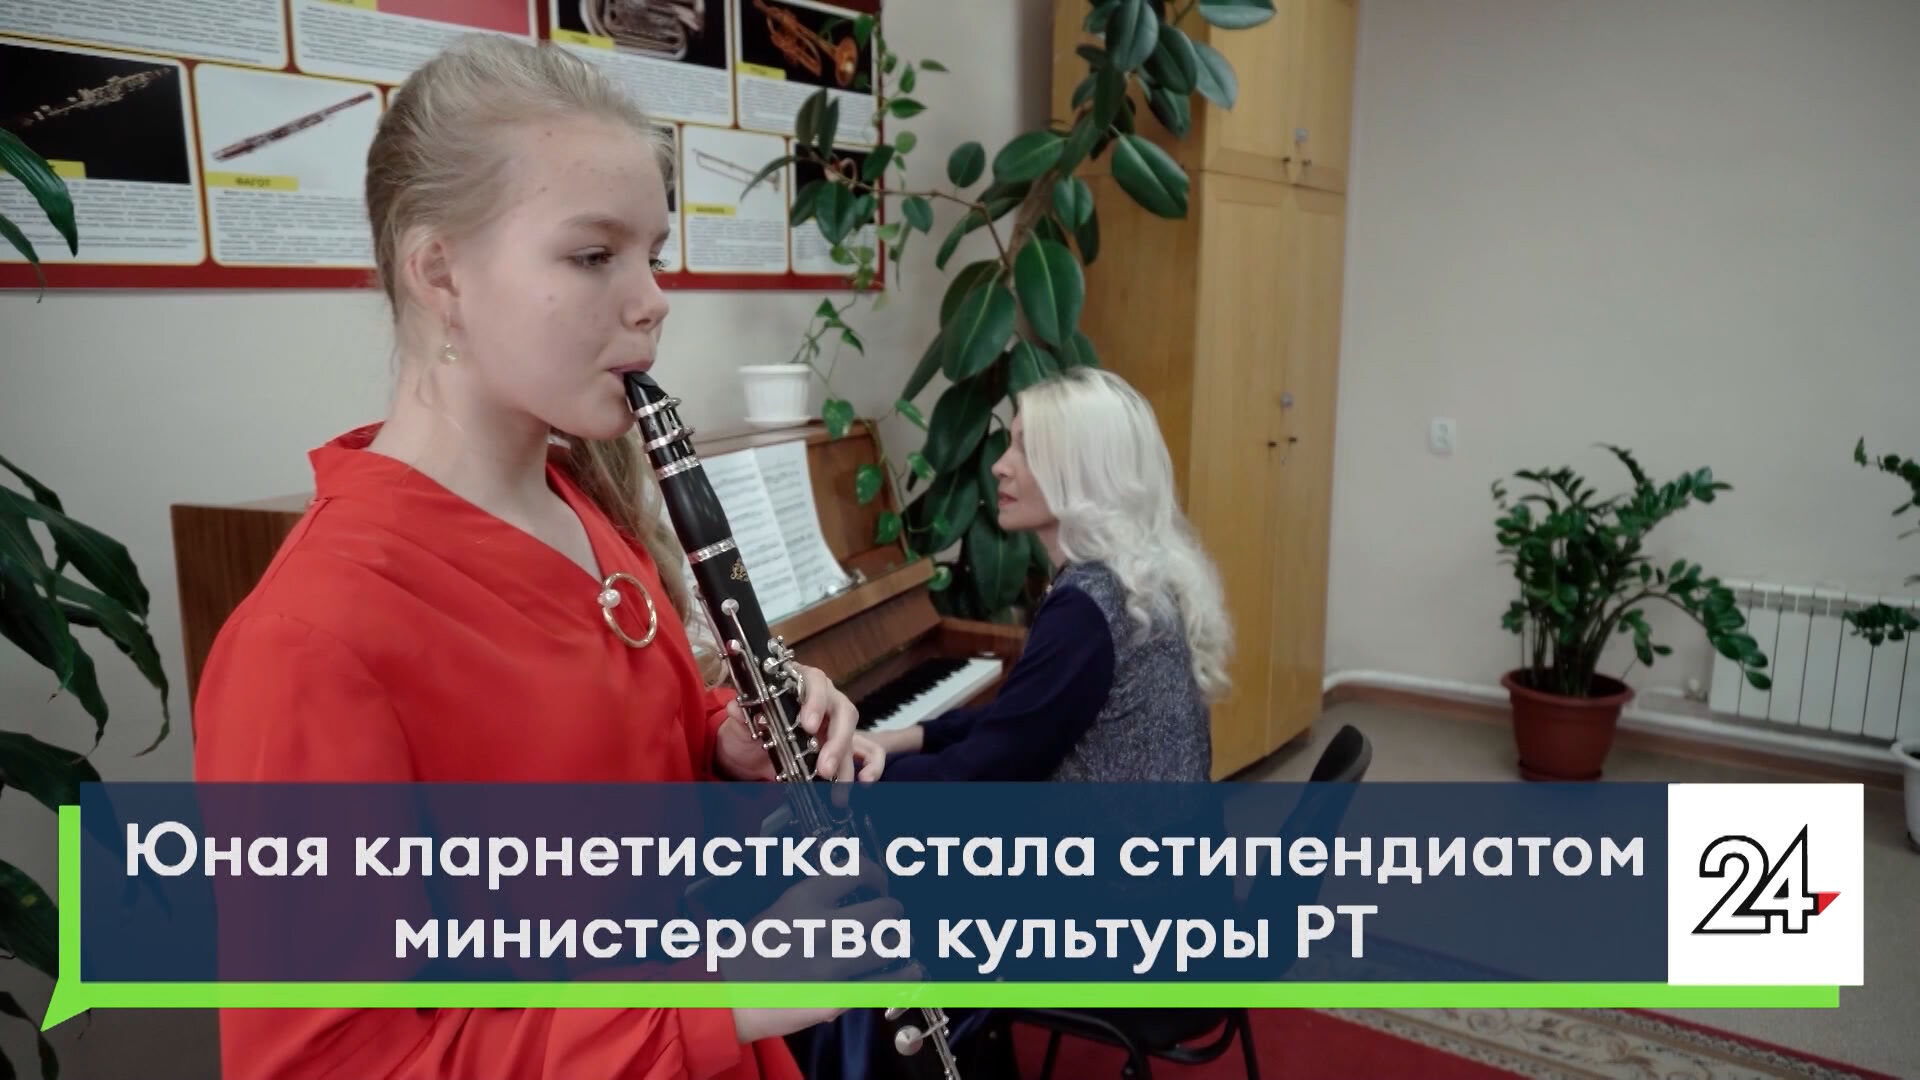 Юная кларнетистка из Челнов стала стипендиатом Министерства культуры РТ